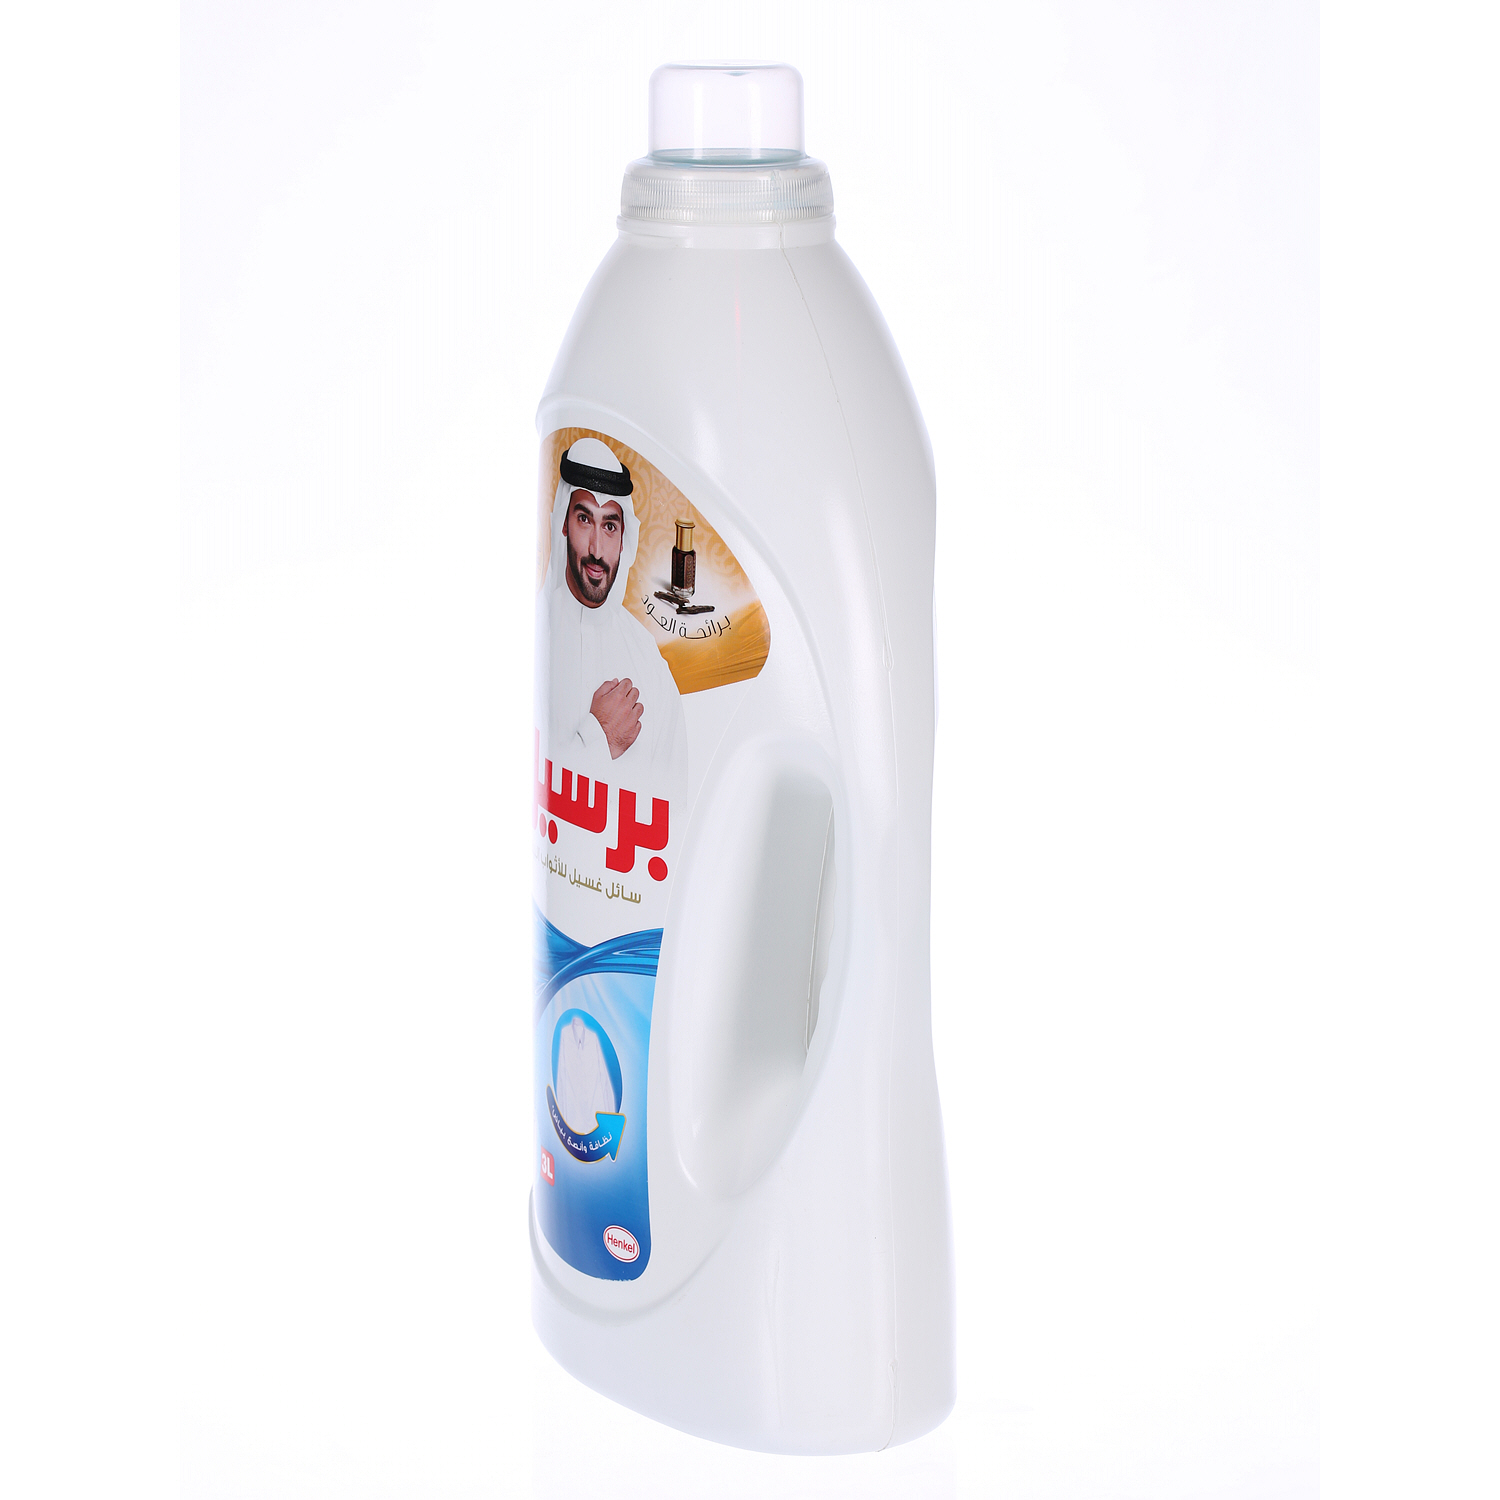 Persil White Cloth Detergent Liquid Oud 3 L